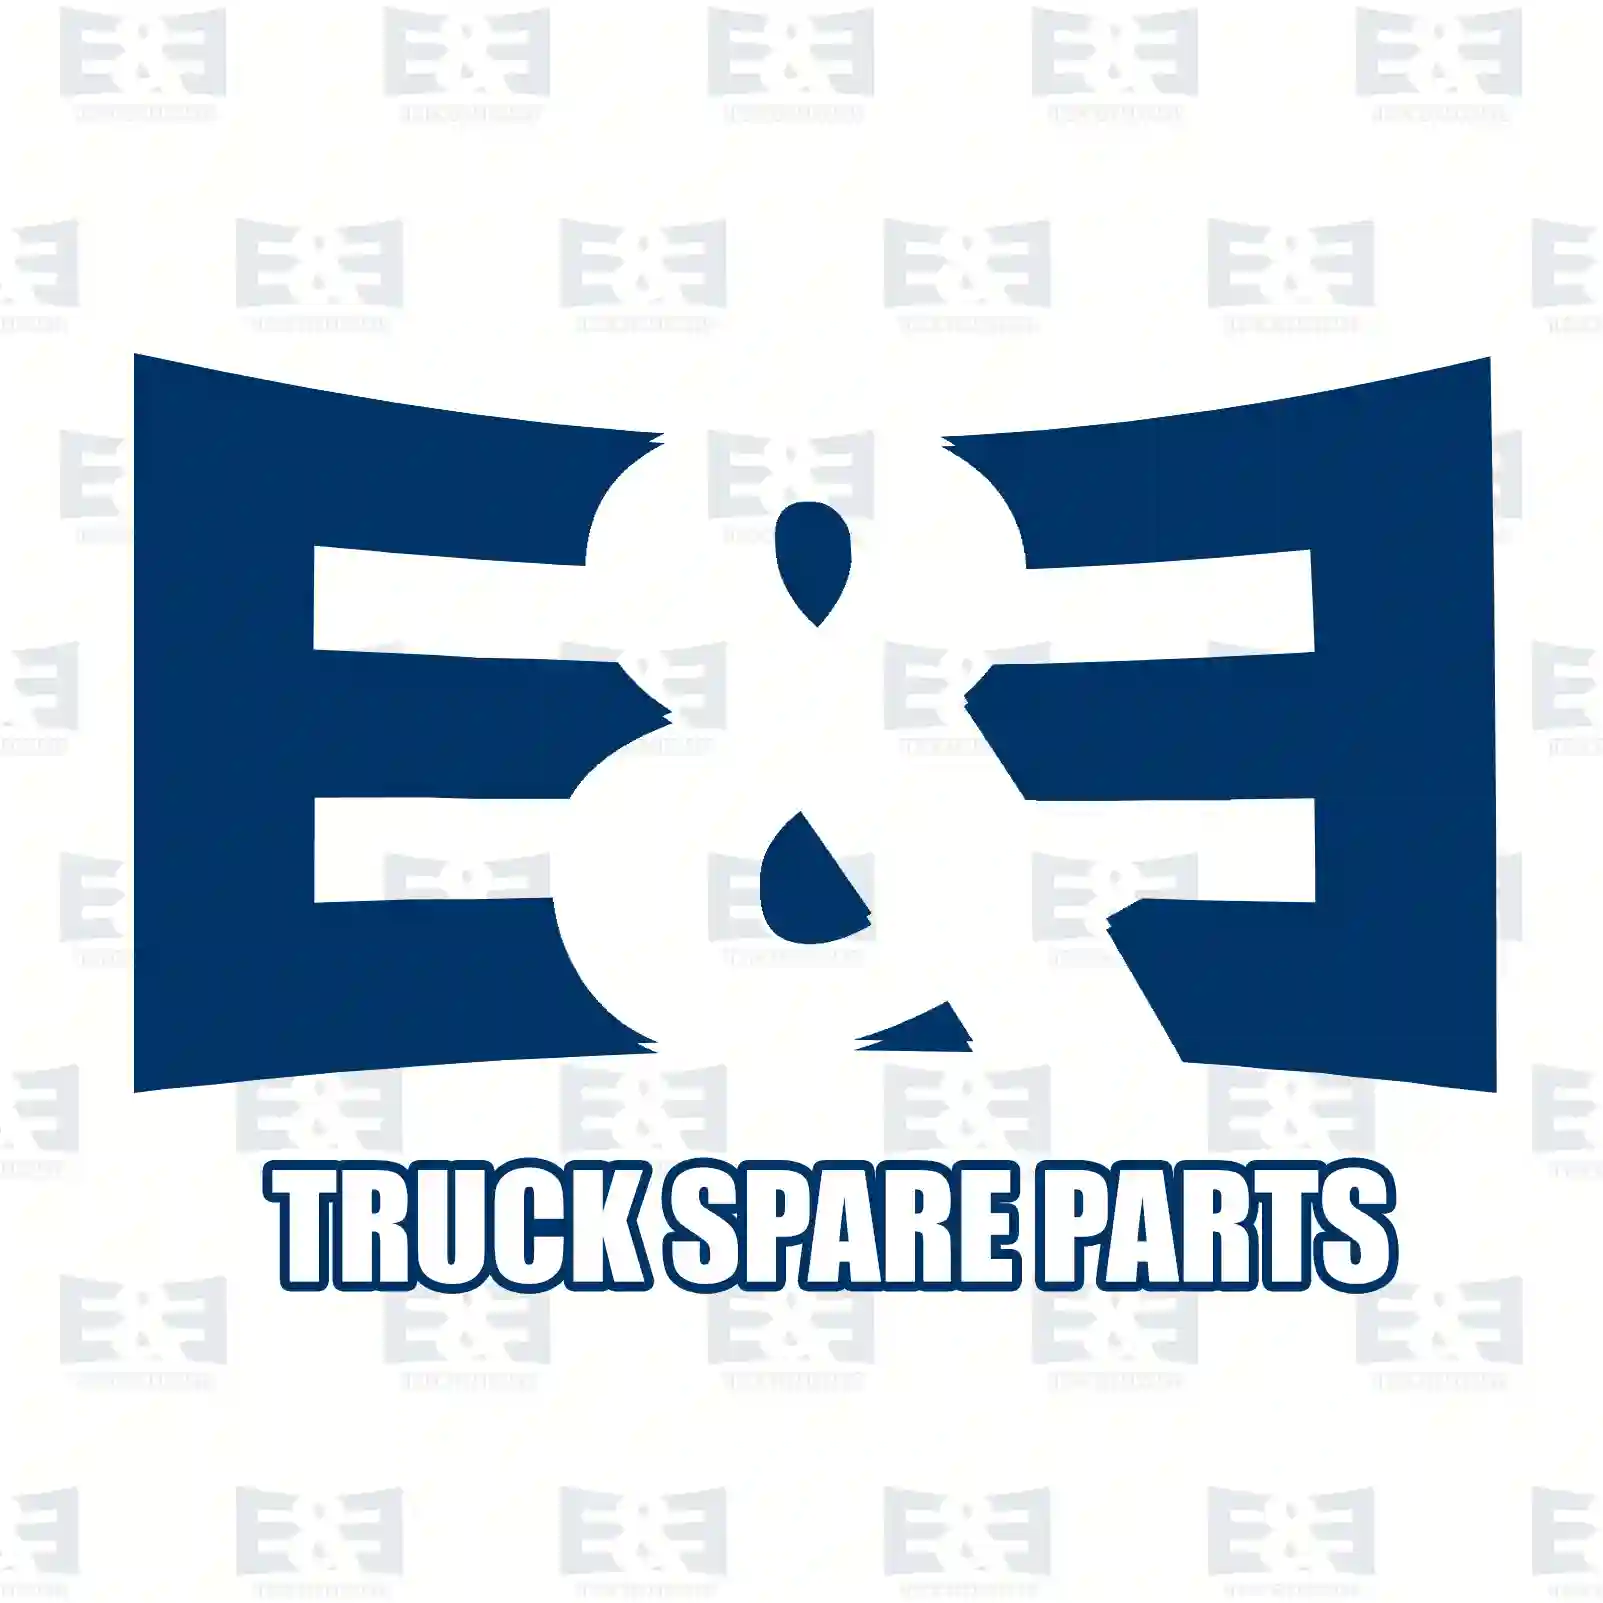 Overhaul kit, 2E2206856, 271090, 3095199 ||  2E2206856 E&E Truck Spare Parts | Truck Spare Parts, Auotomotive Spare Parts Overhaul kit, 2E2206856, 271090, 3095199 ||  2E2206856 E&E Truck Spare Parts | Truck Spare Parts, Auotomotive Spare Parts